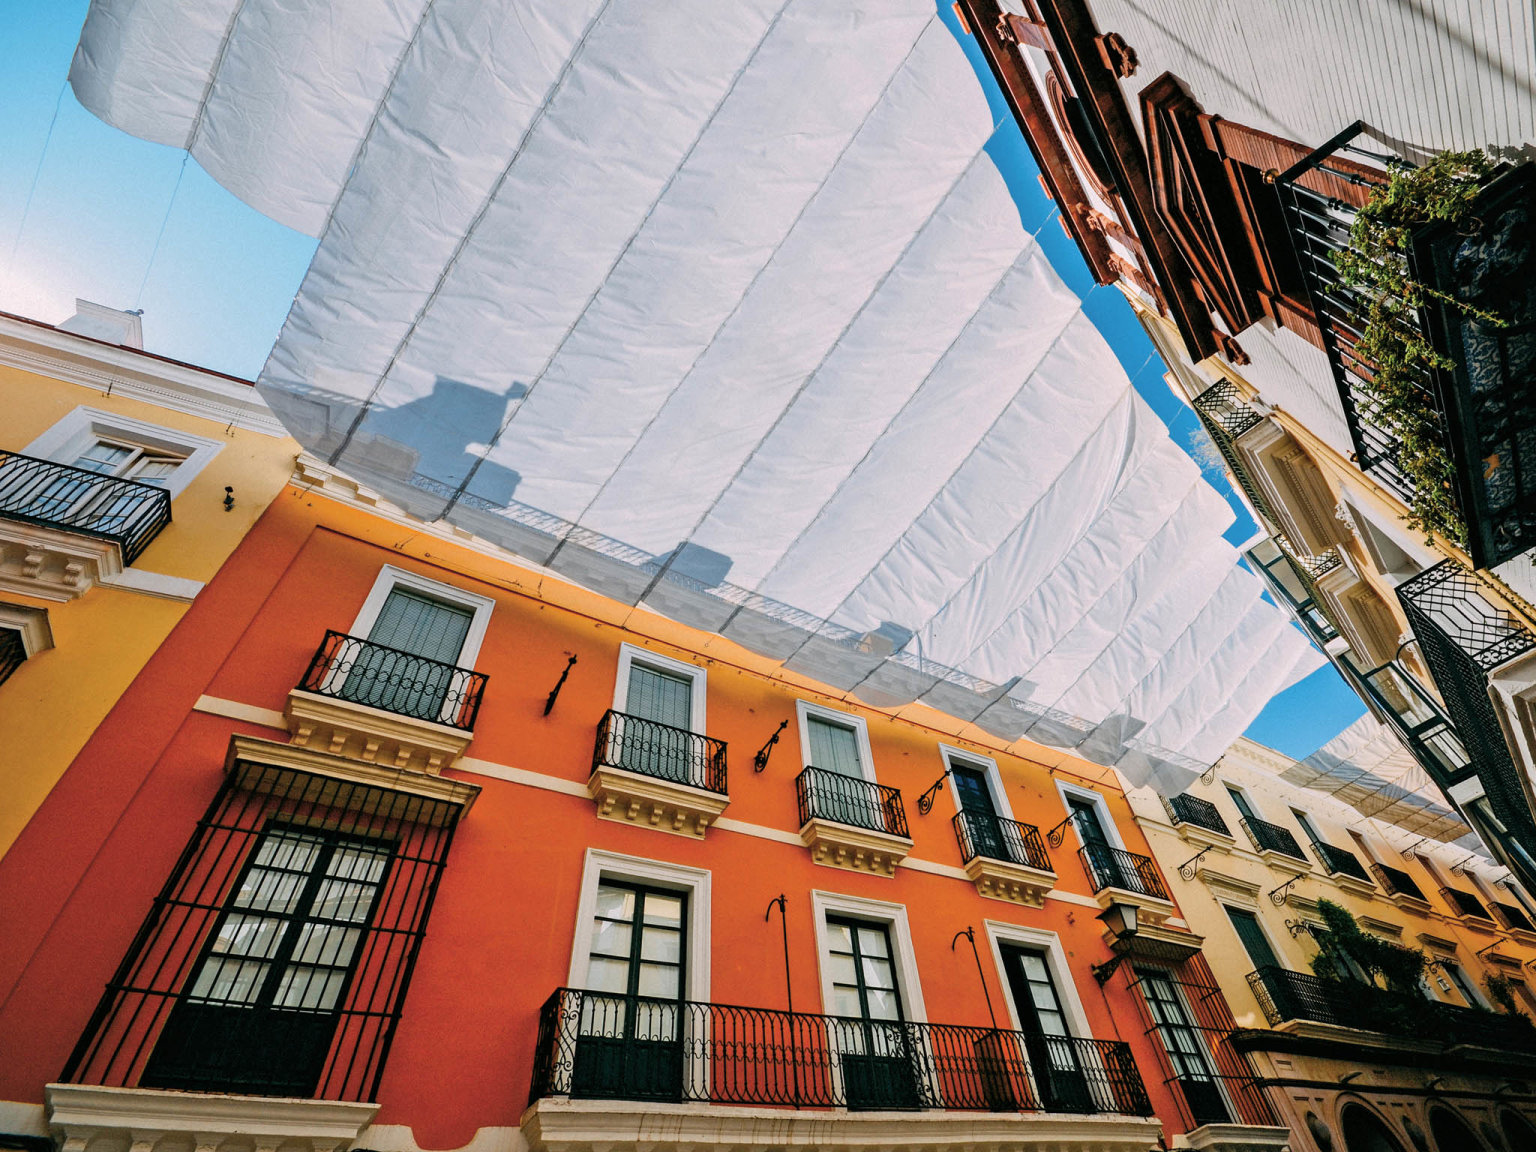 Ulice španìlské Sevilly chrání pøed sluneèním žárem textilní zástìny natažené mezi domy.